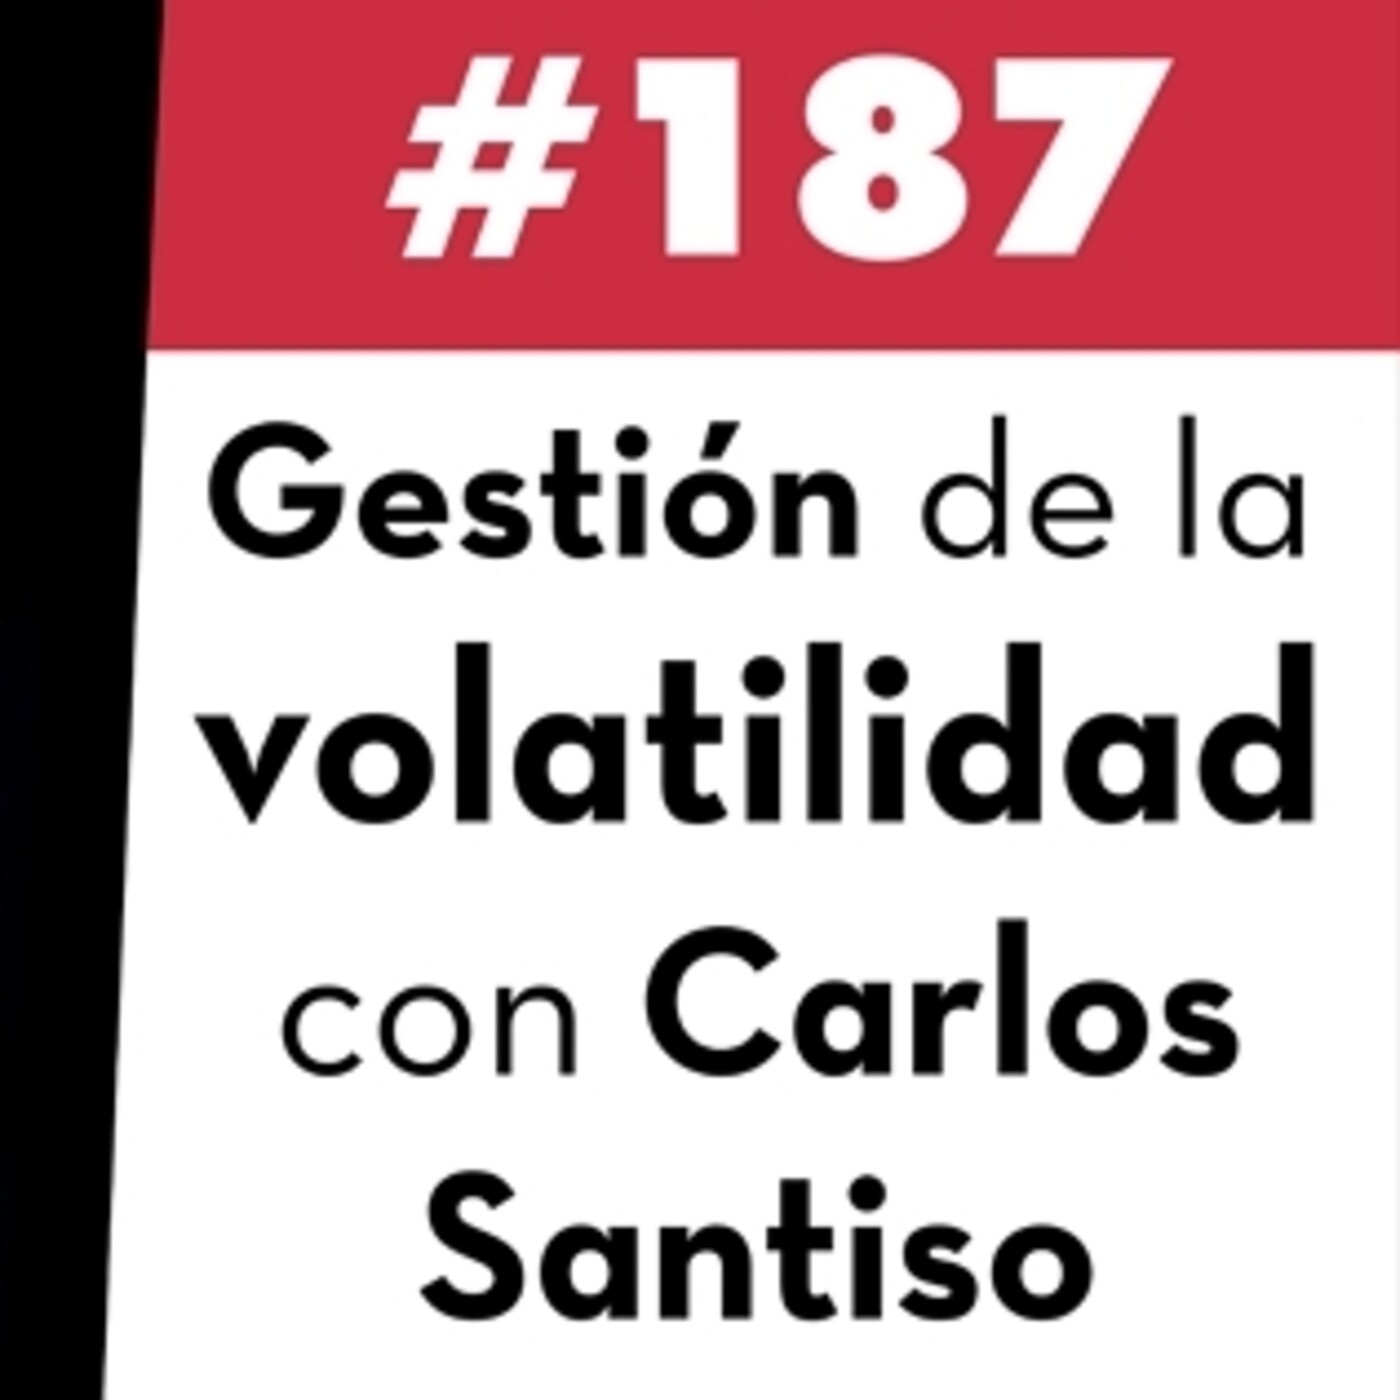 187. Gestión de la volatilidad con Carlos Santiso